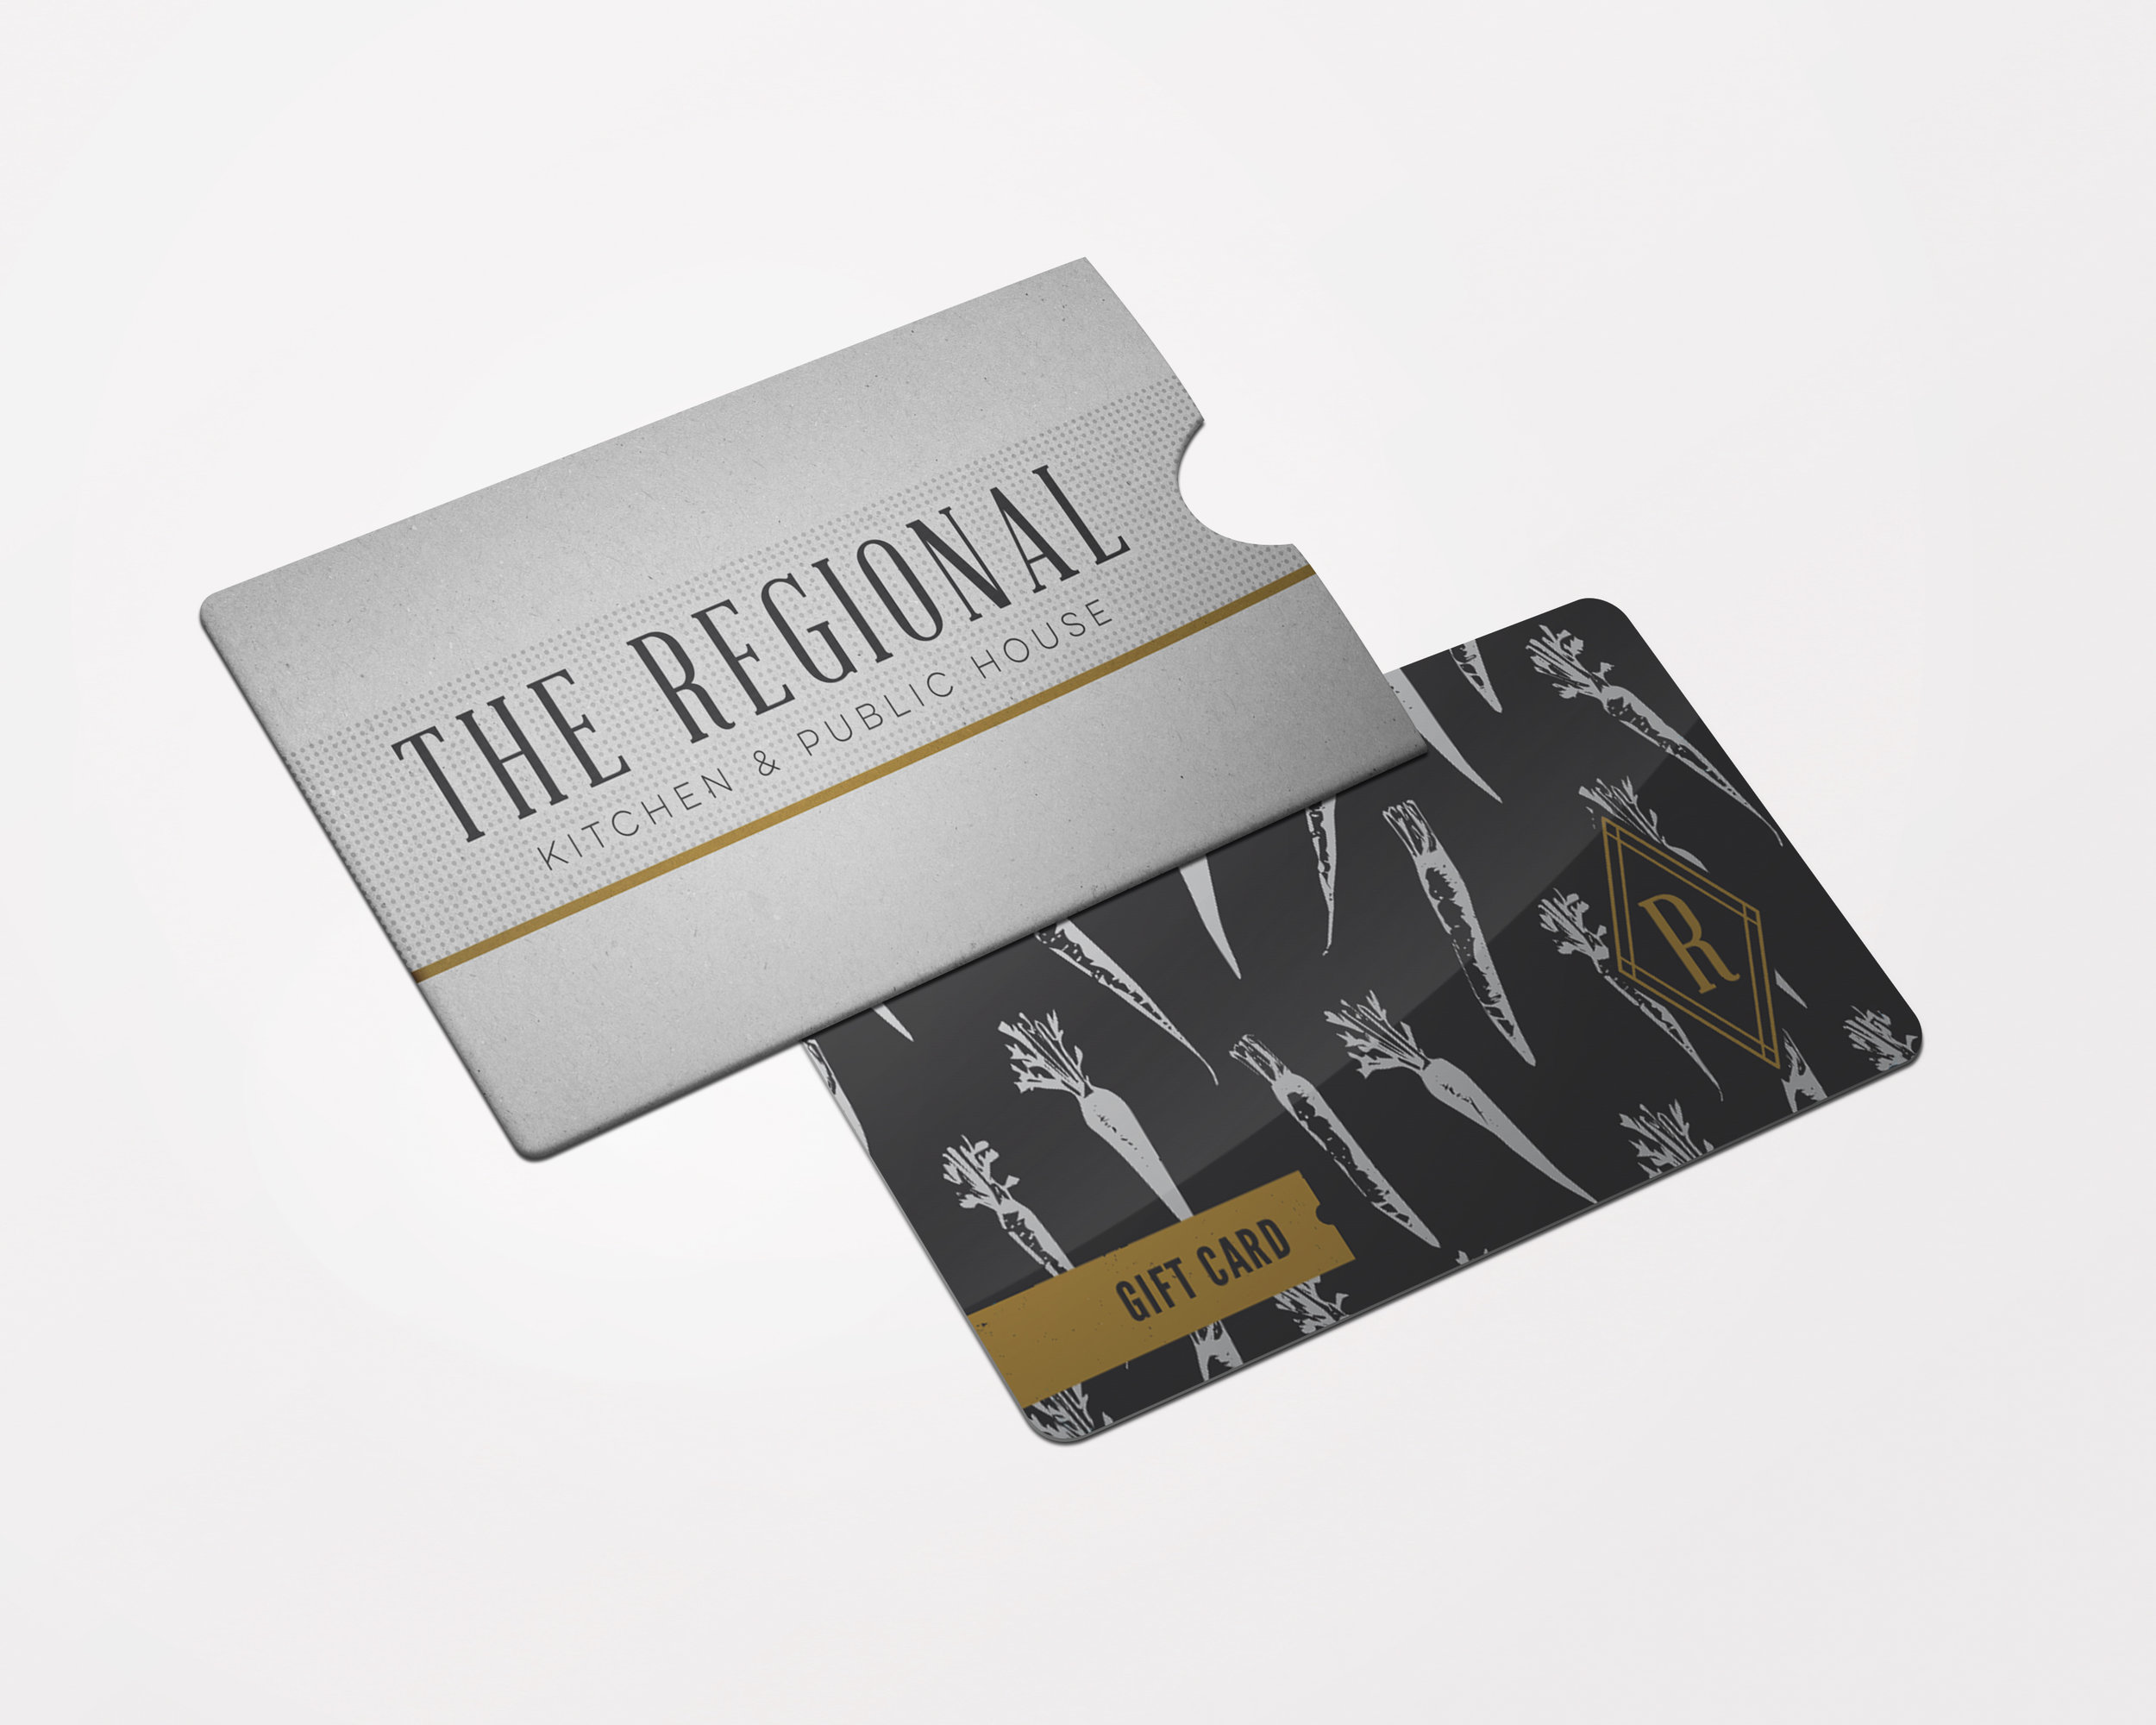 The Regional_Giftcard.jpg